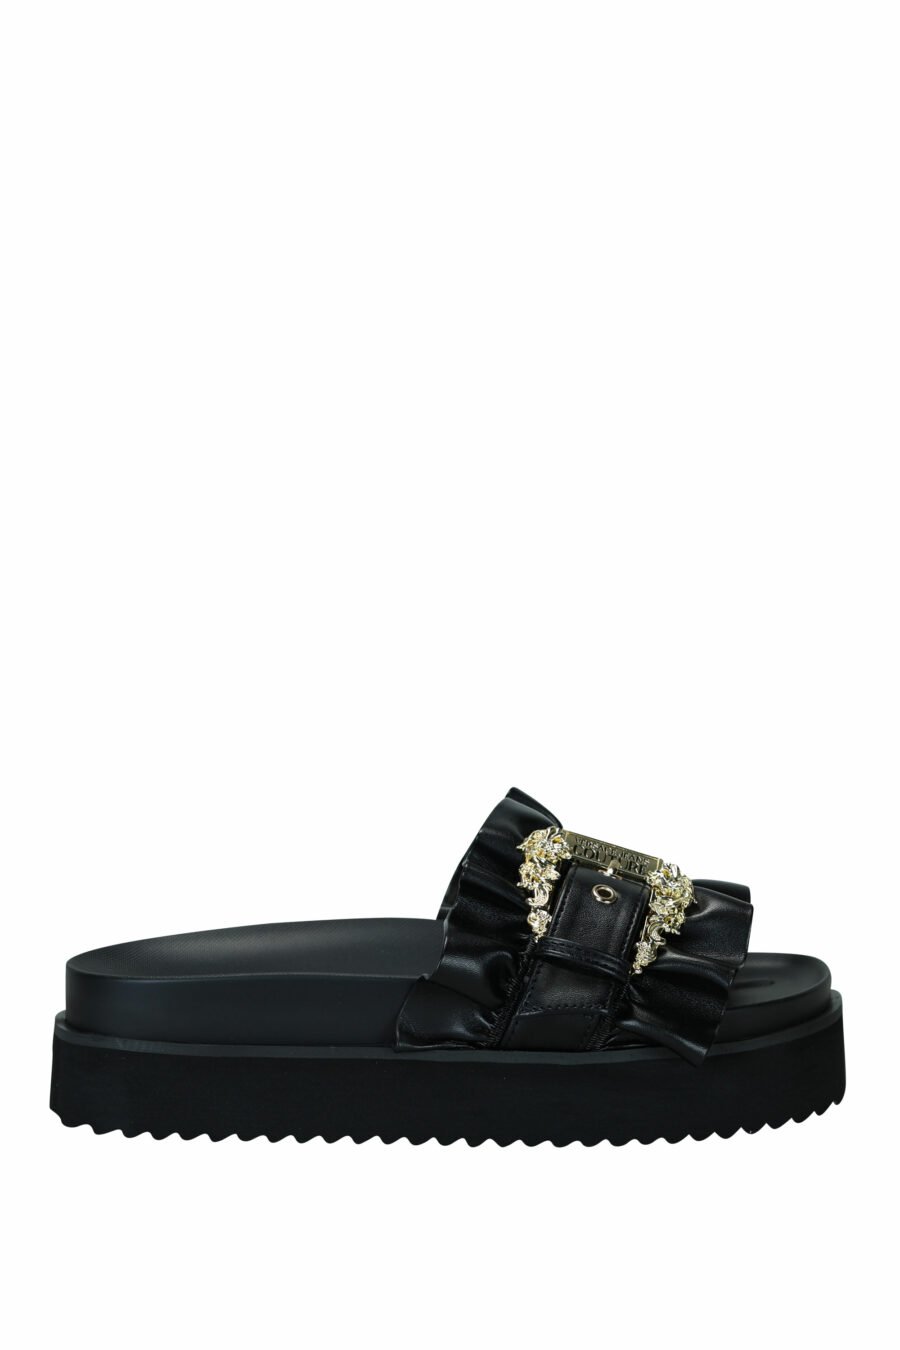 Sandales noires à plateforme avec boucle baroque dorée - 8052019607192